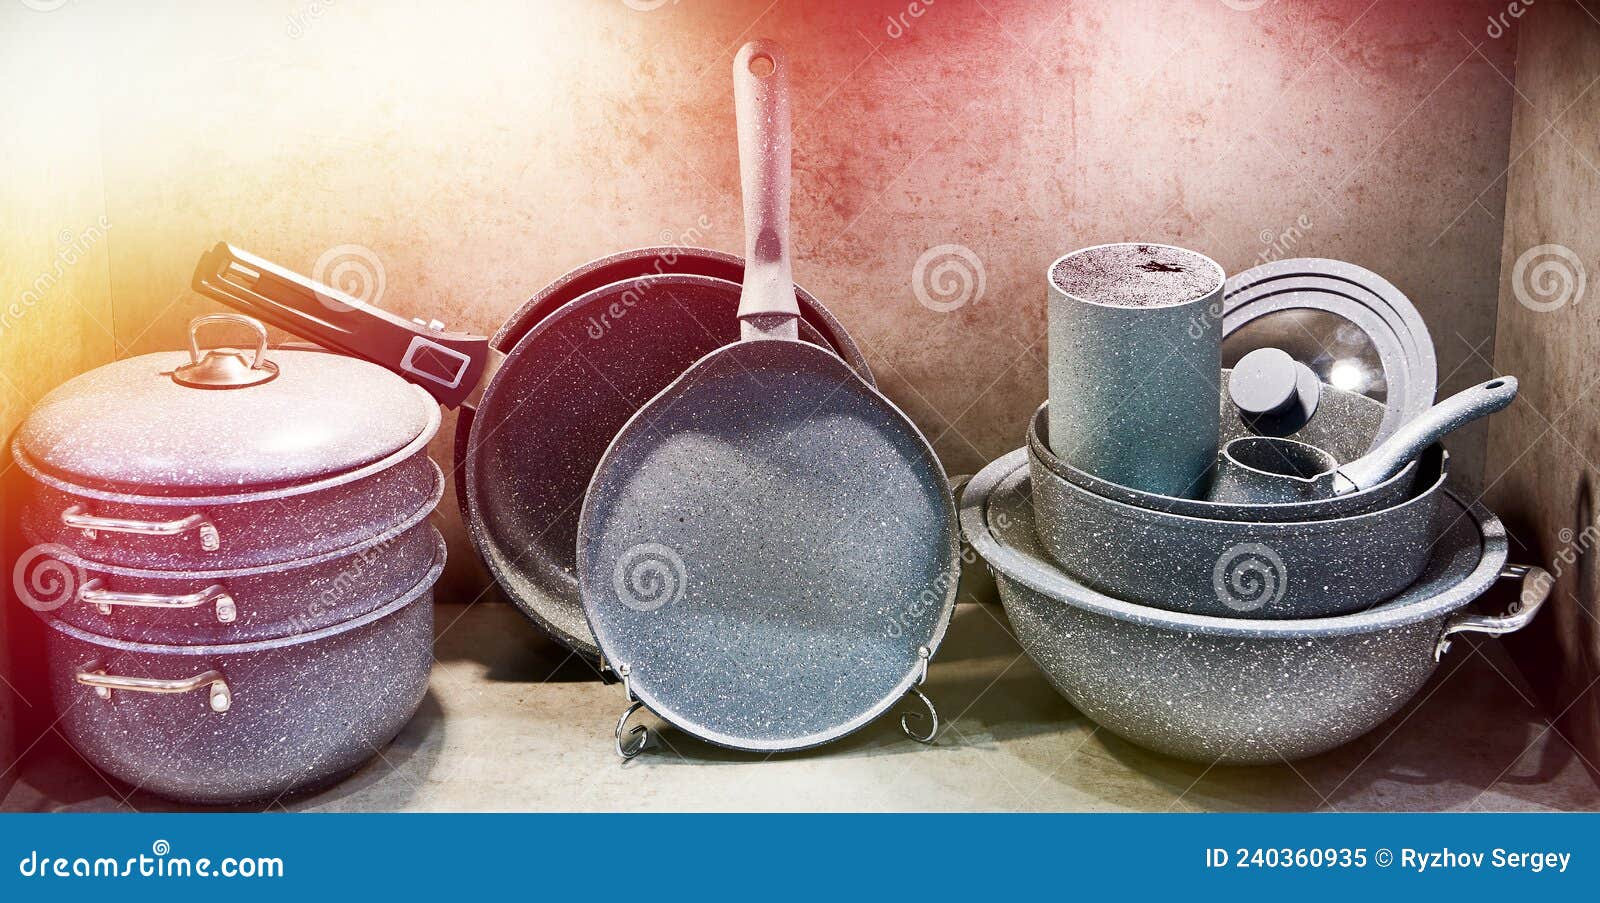 https://thumbs.dreamstime.com/z/cocinas-de-utensilios-cocina-en-la-tienda-art%C3%ADculos-para-el-hogar-cocci%C3%B3n-wok-grill-frying-pans-240360935.jpg